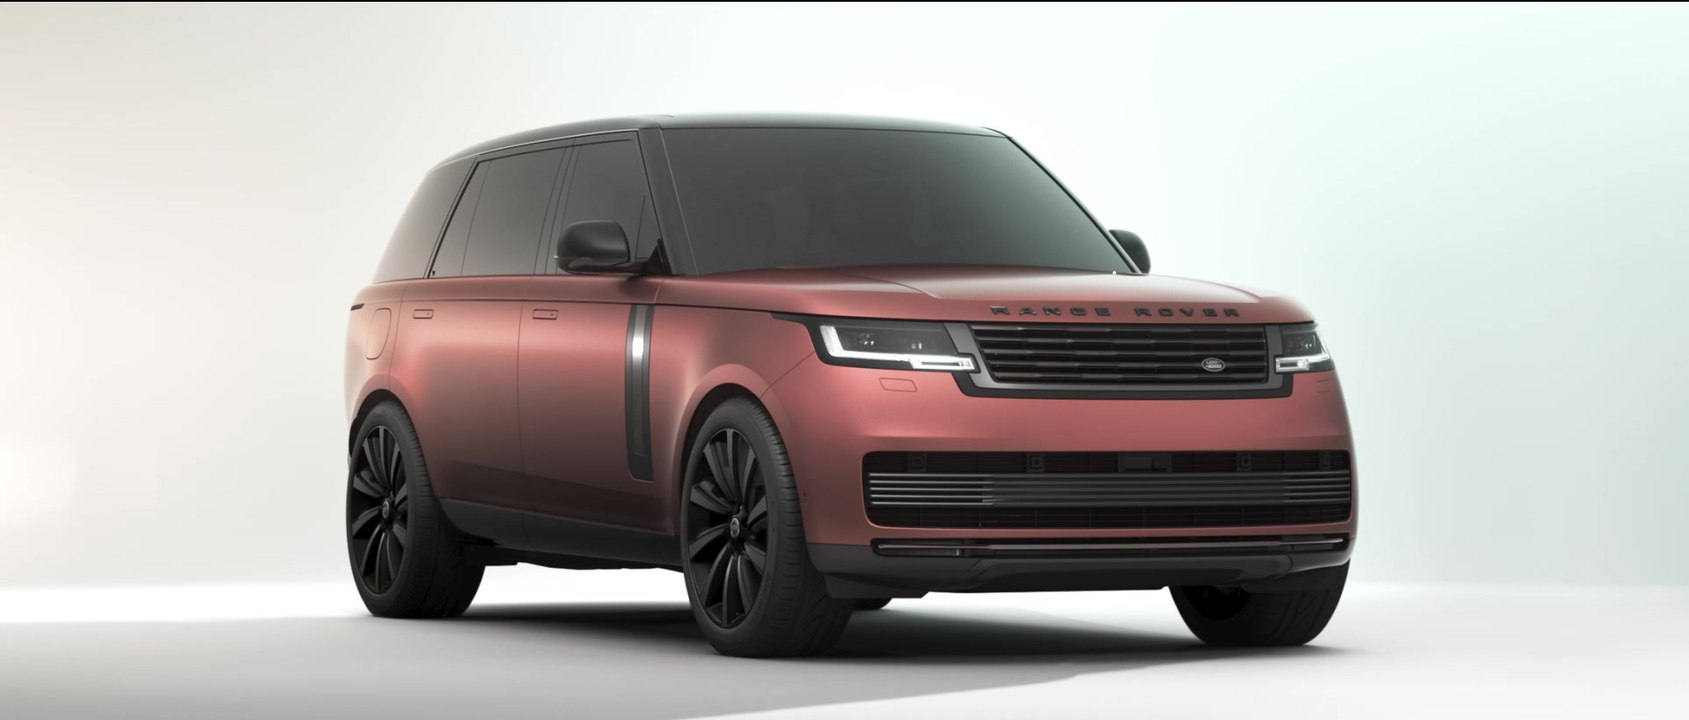 Spitzenmodell Range Rover SV und Effiziente Plug-in Hybride - Den neuen Range Rover SV mit besonders Nachhaltigen und luxuriösen Varianten